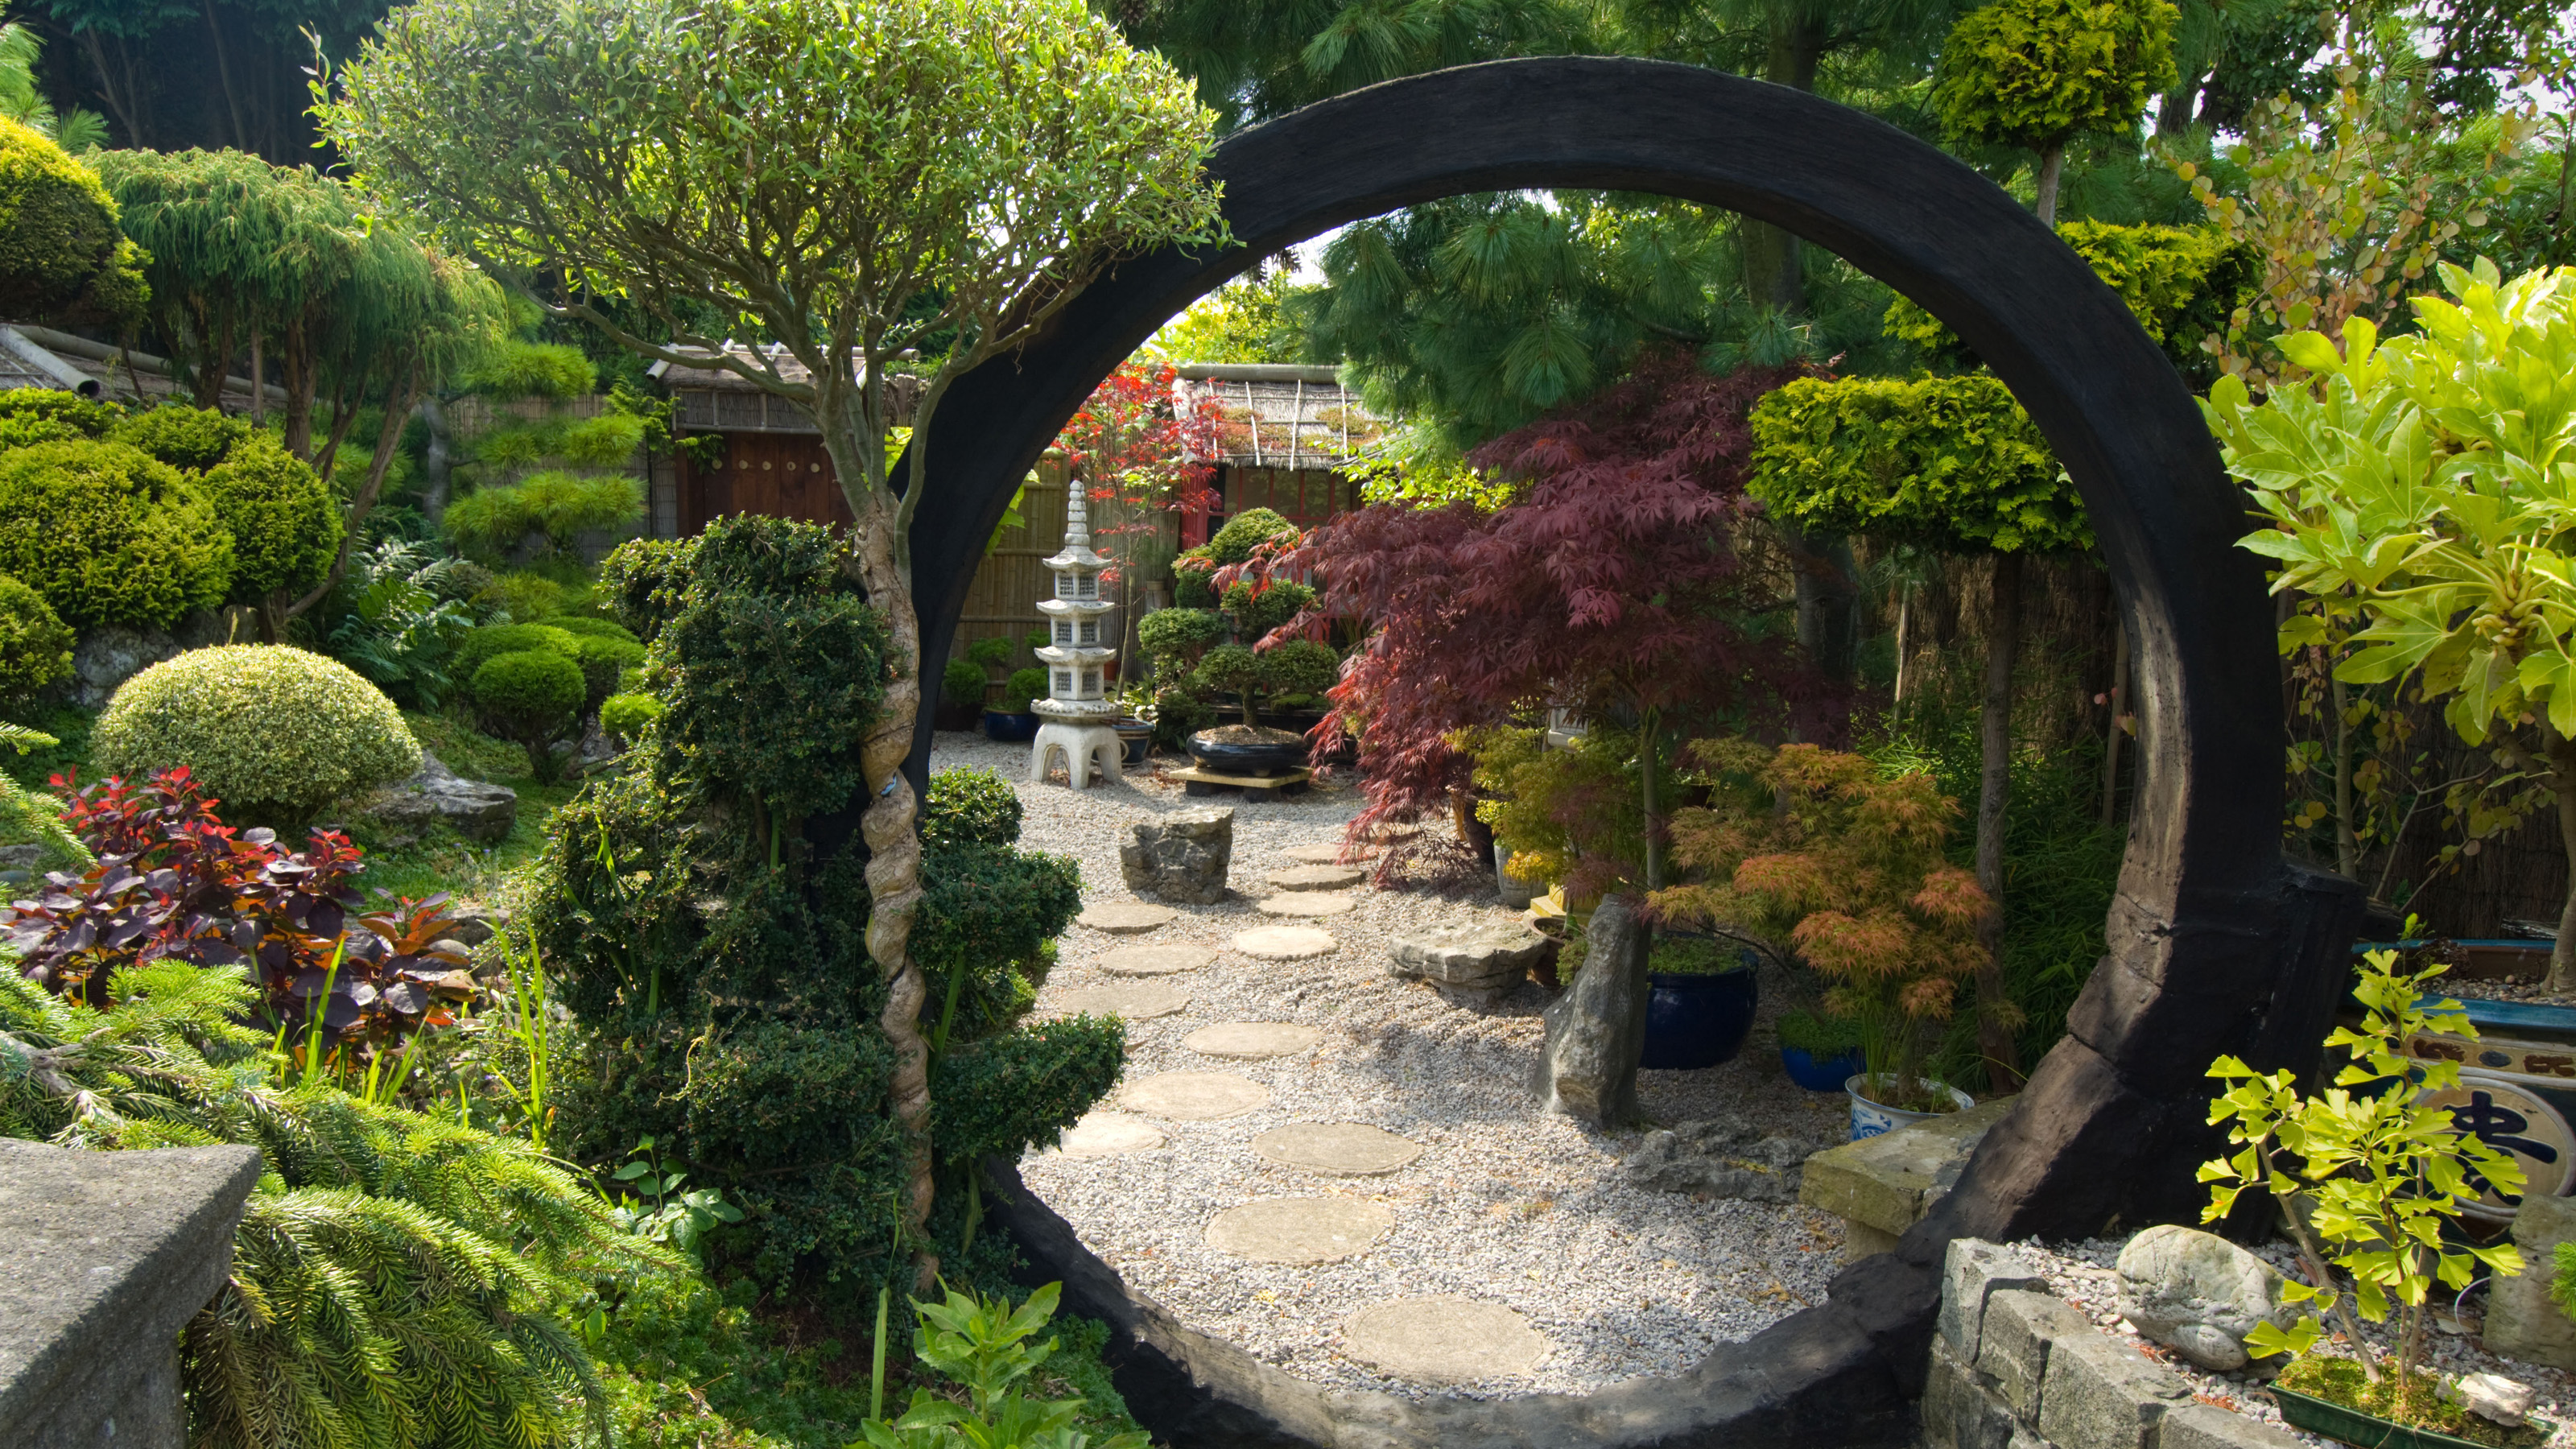 DIY Cloud Rainy Flower Pot Soil Seeds Wall Hung Planter Bonsai Home Garden Decor